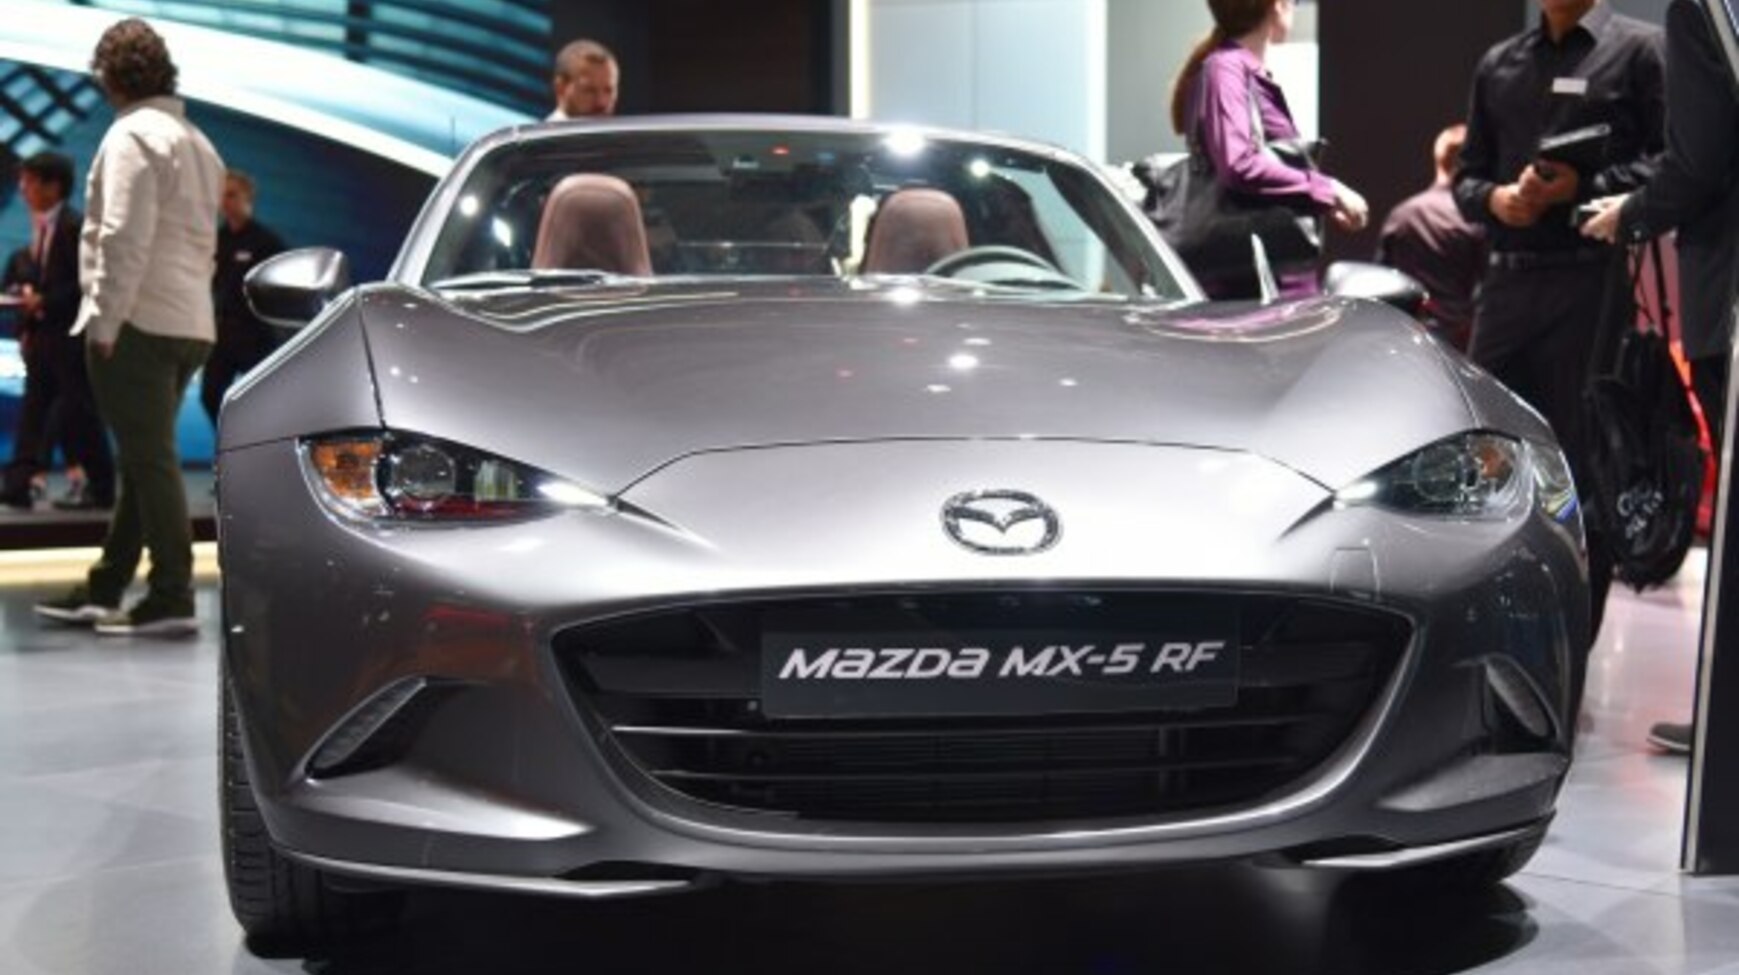 Mazda MX-5 RF 1.5 SkyActiv-G (132 Hp) 2018, 2019, 2020, 2021, 2022